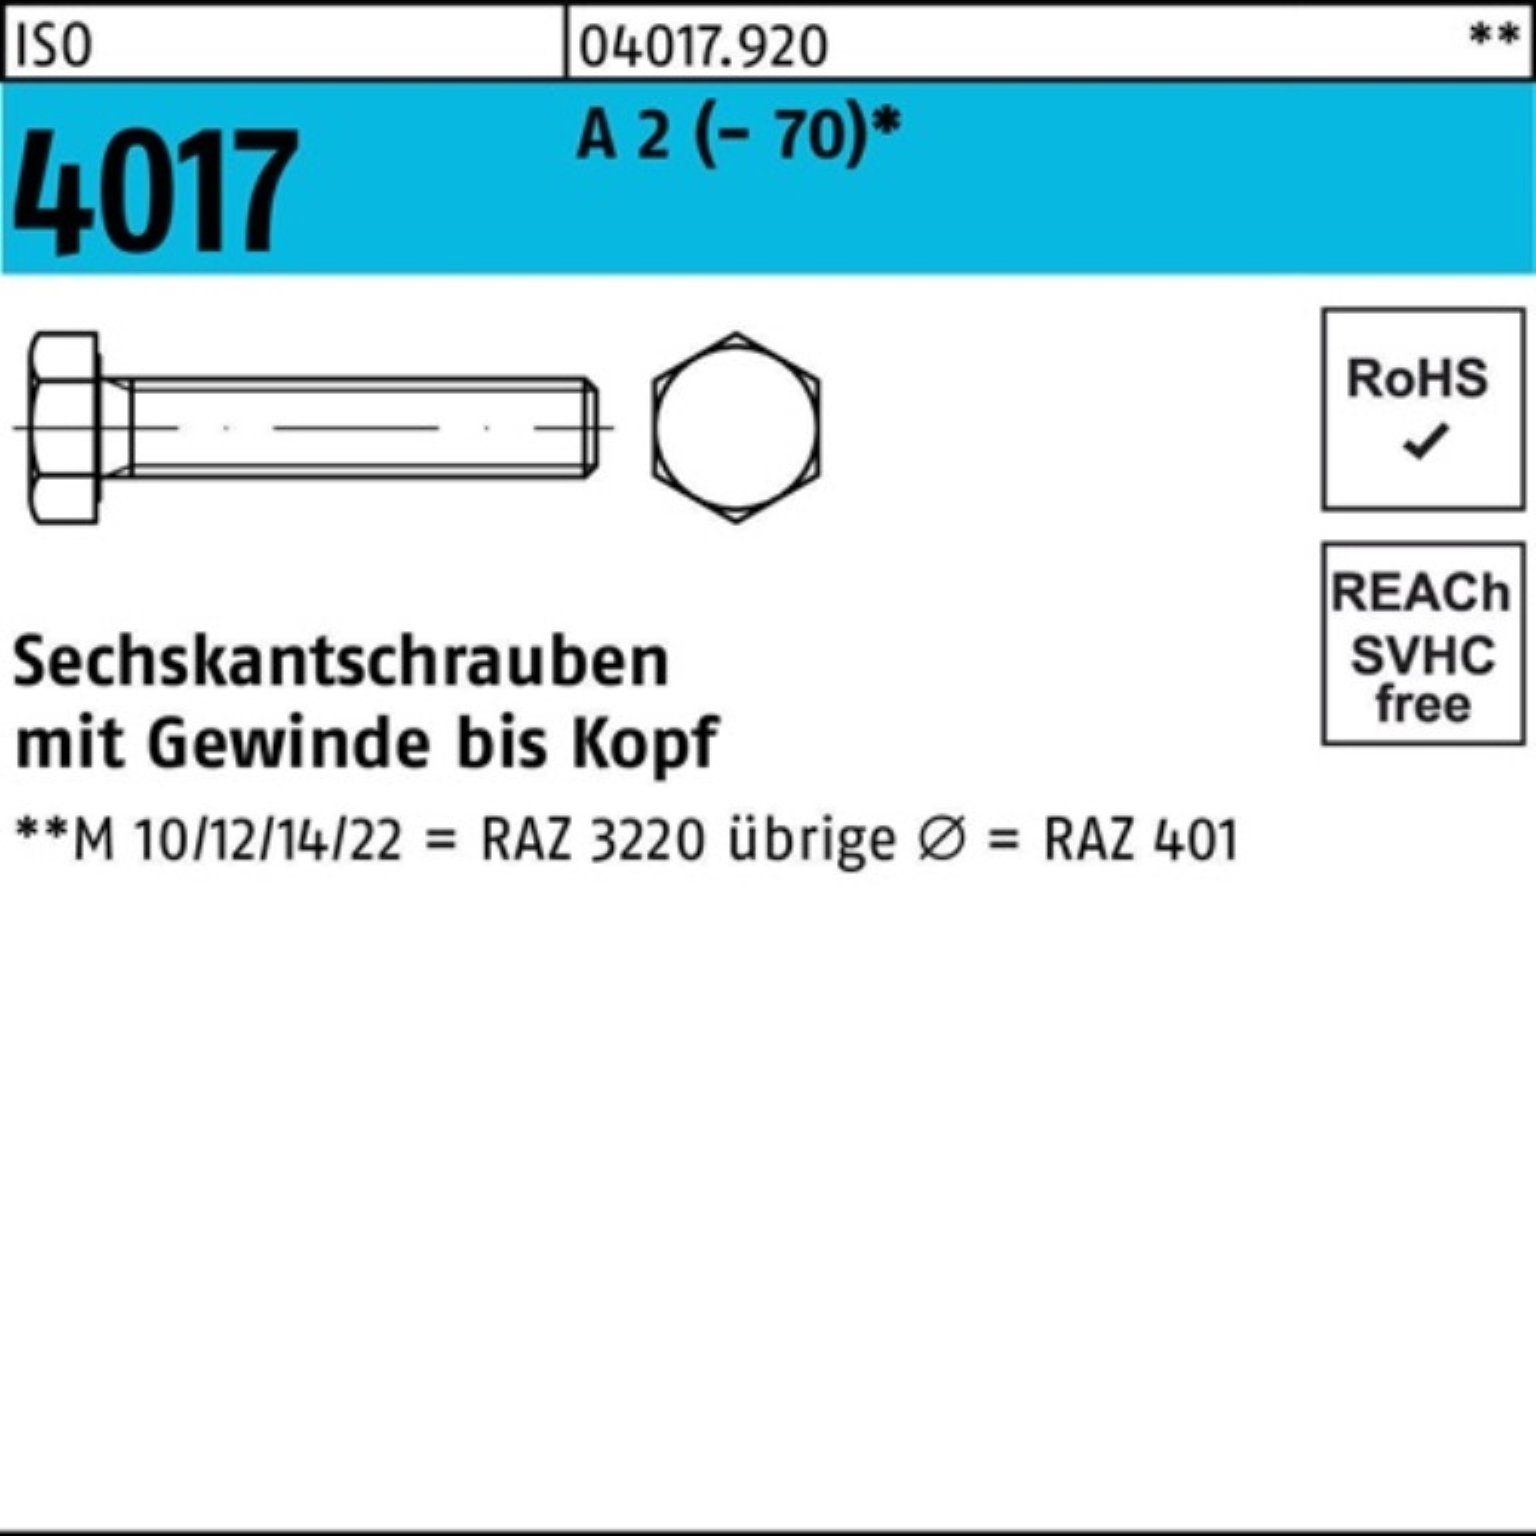 Bufab Sechskantschraube 100er Pack Sechskantschraube ISO 4017 VG M14x 25 A 2 (70) 50 Stück